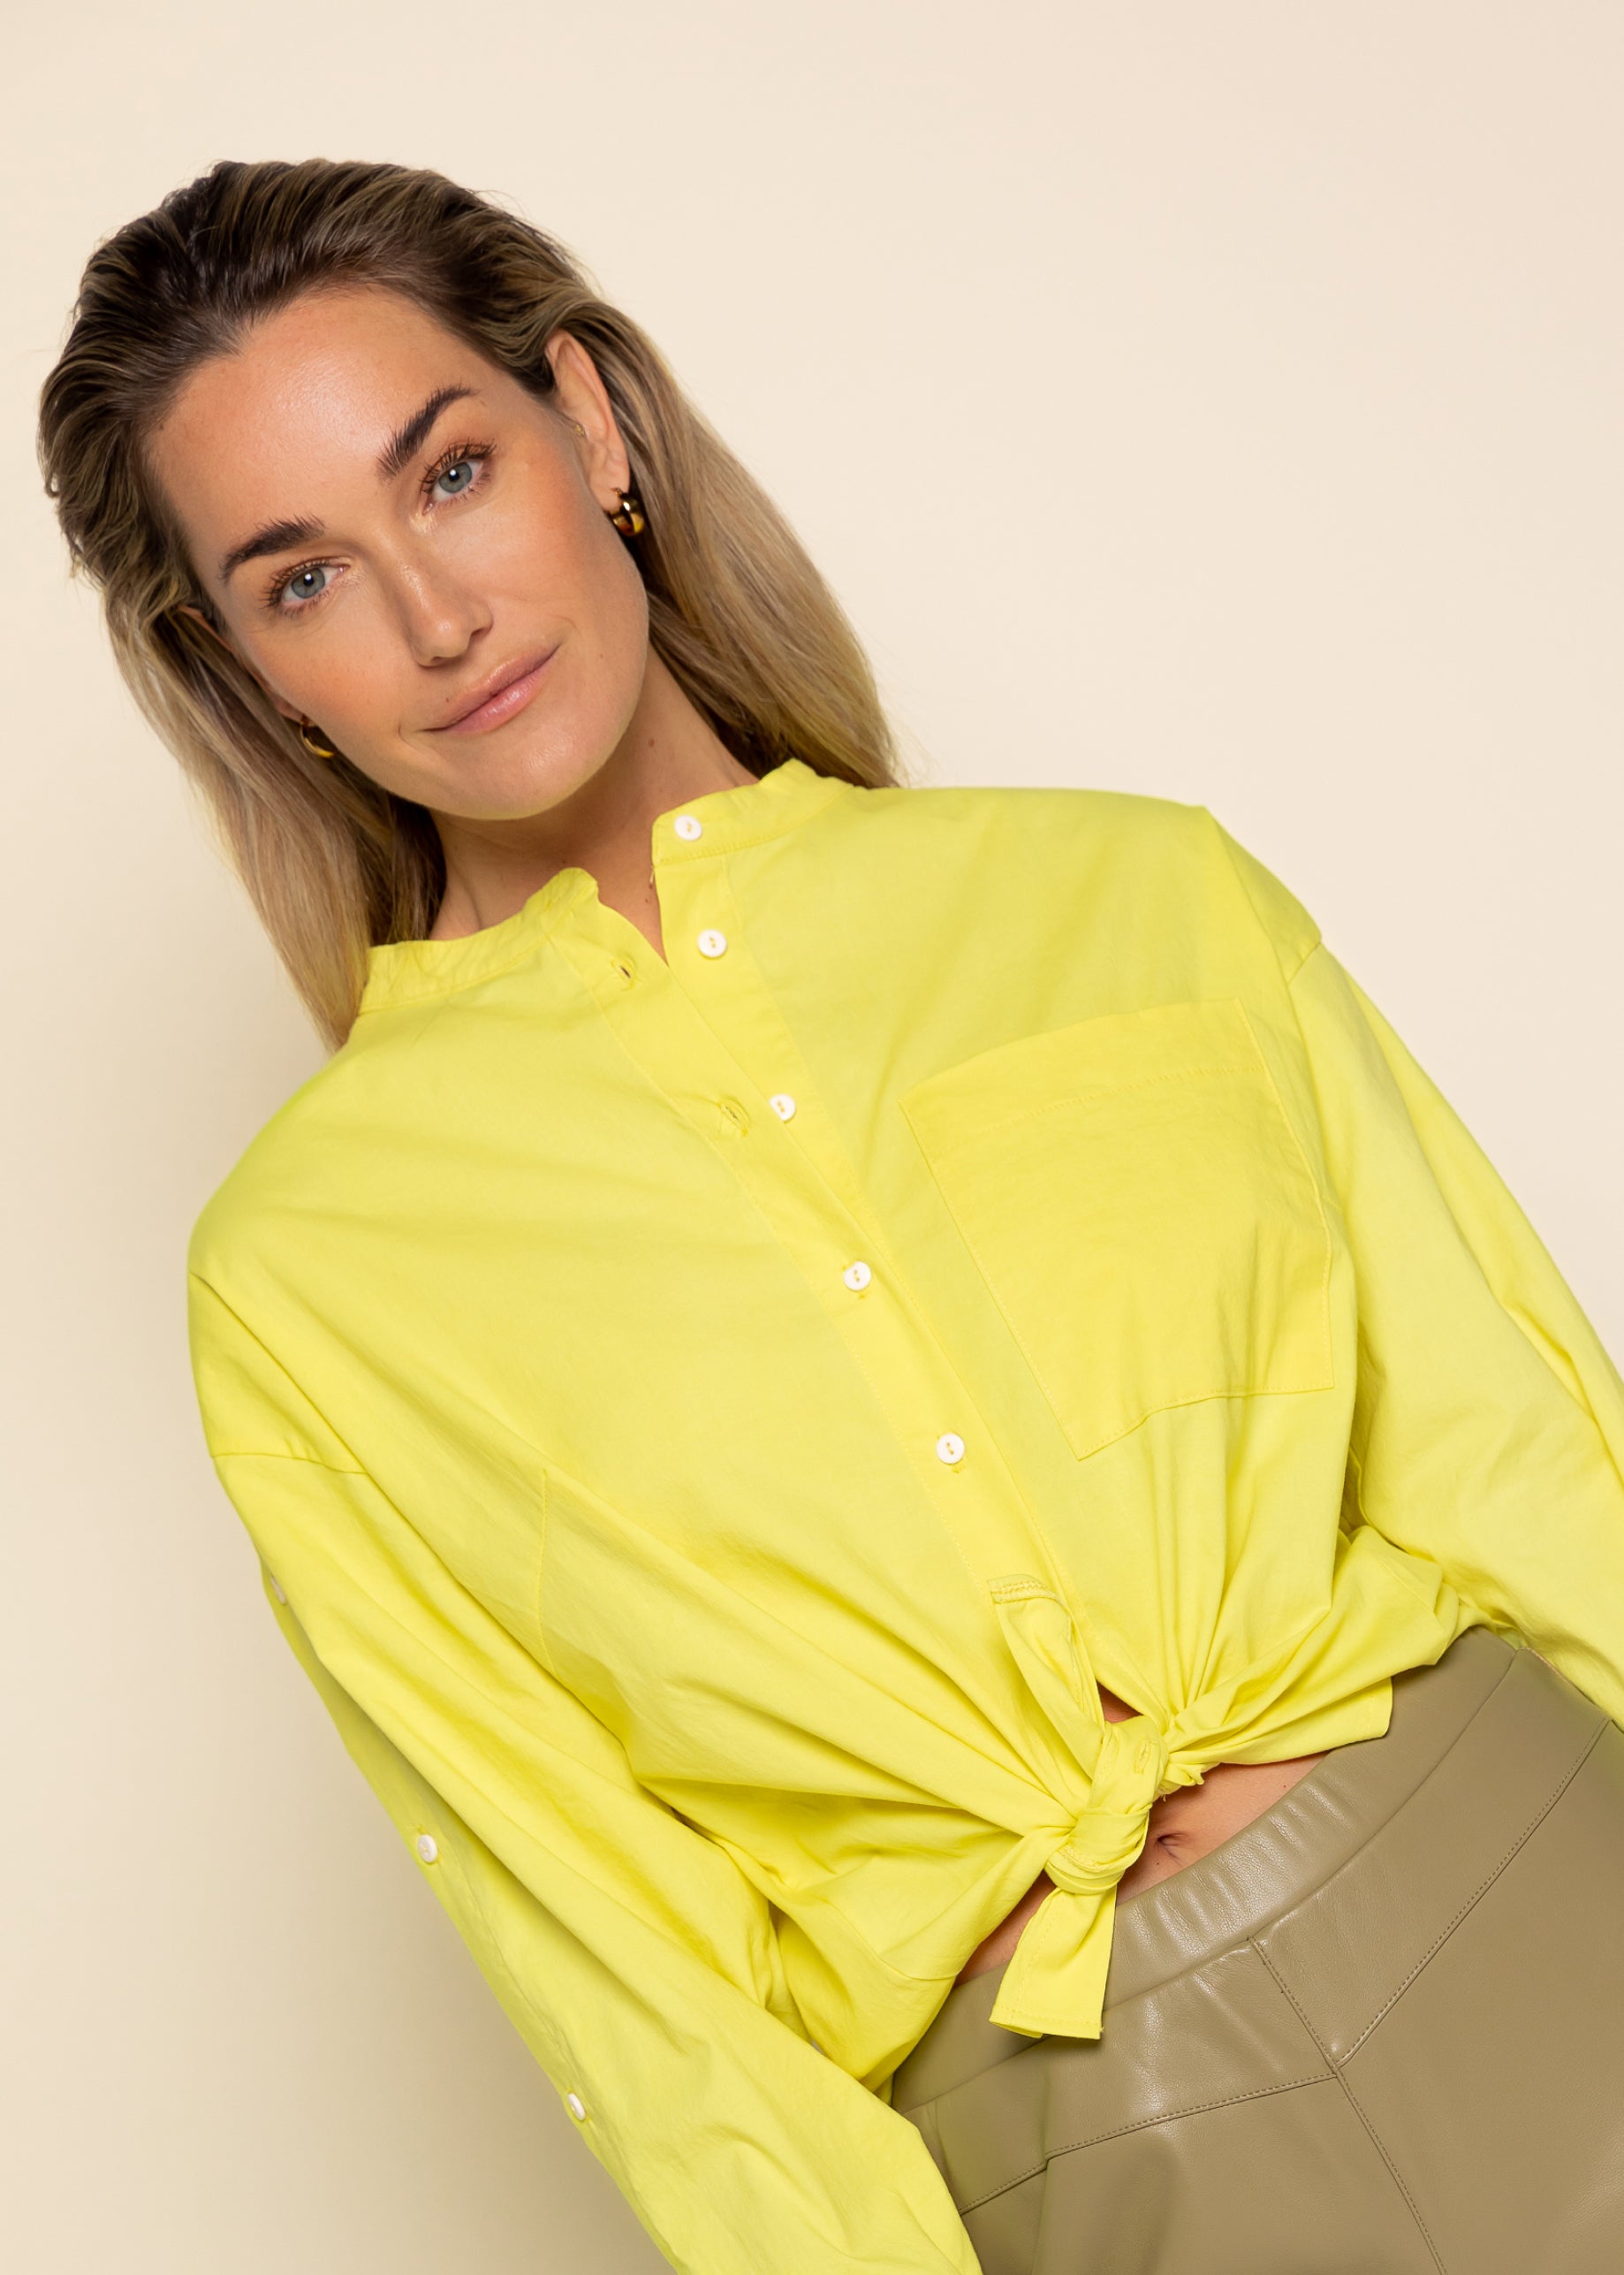 Brochure Elektricien uitdrukken Nika blouse | Geel | Simple – Simple the Brand